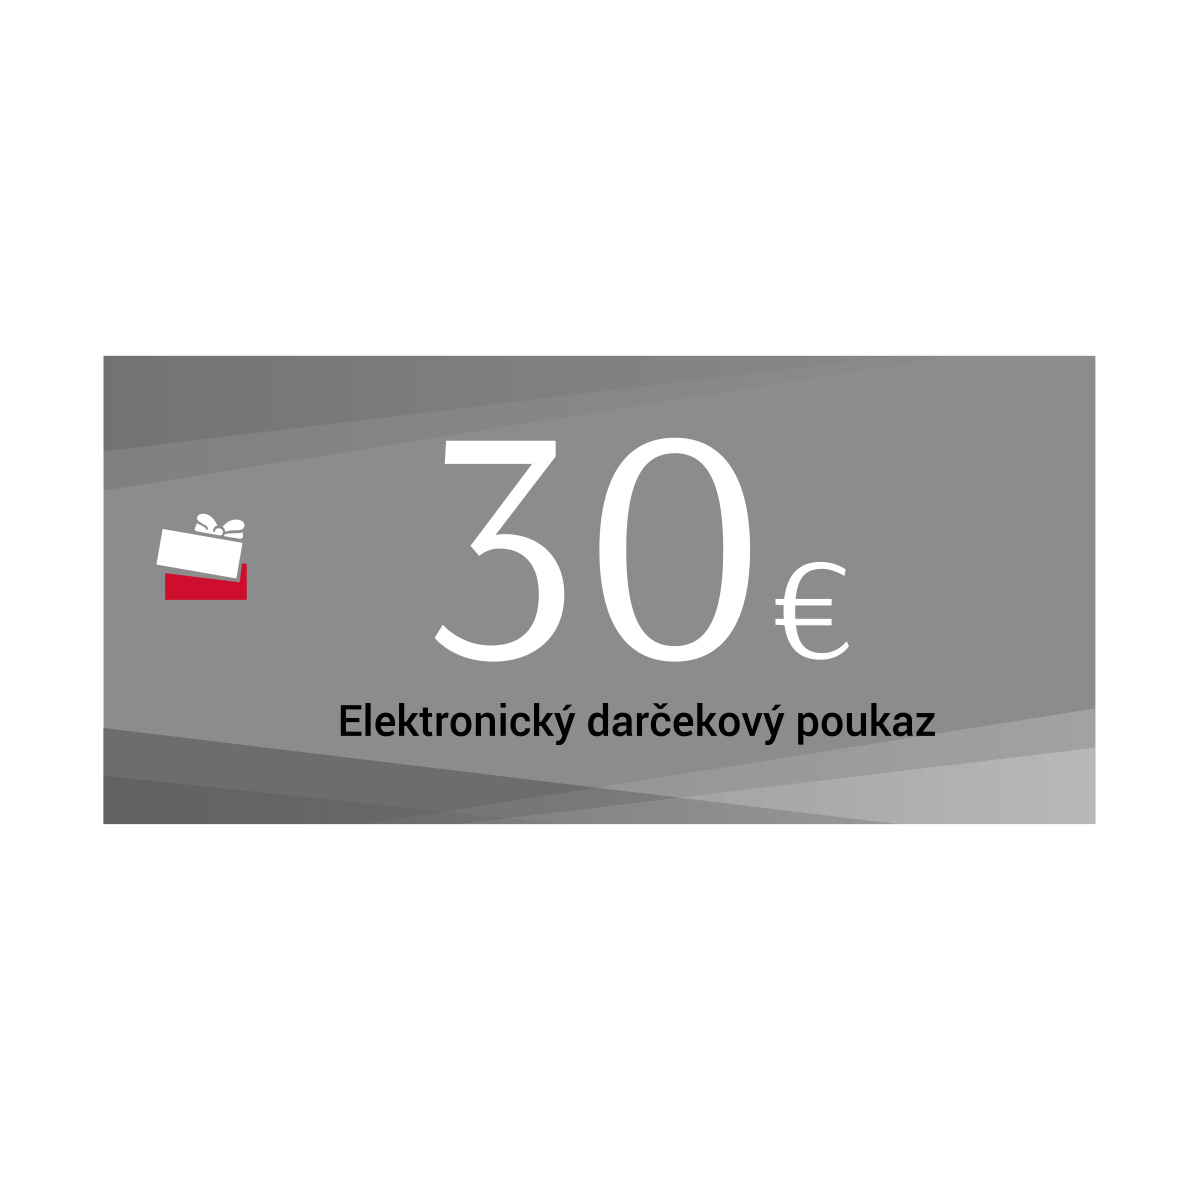 Darčekový poukaz 30 Eur-elektronický